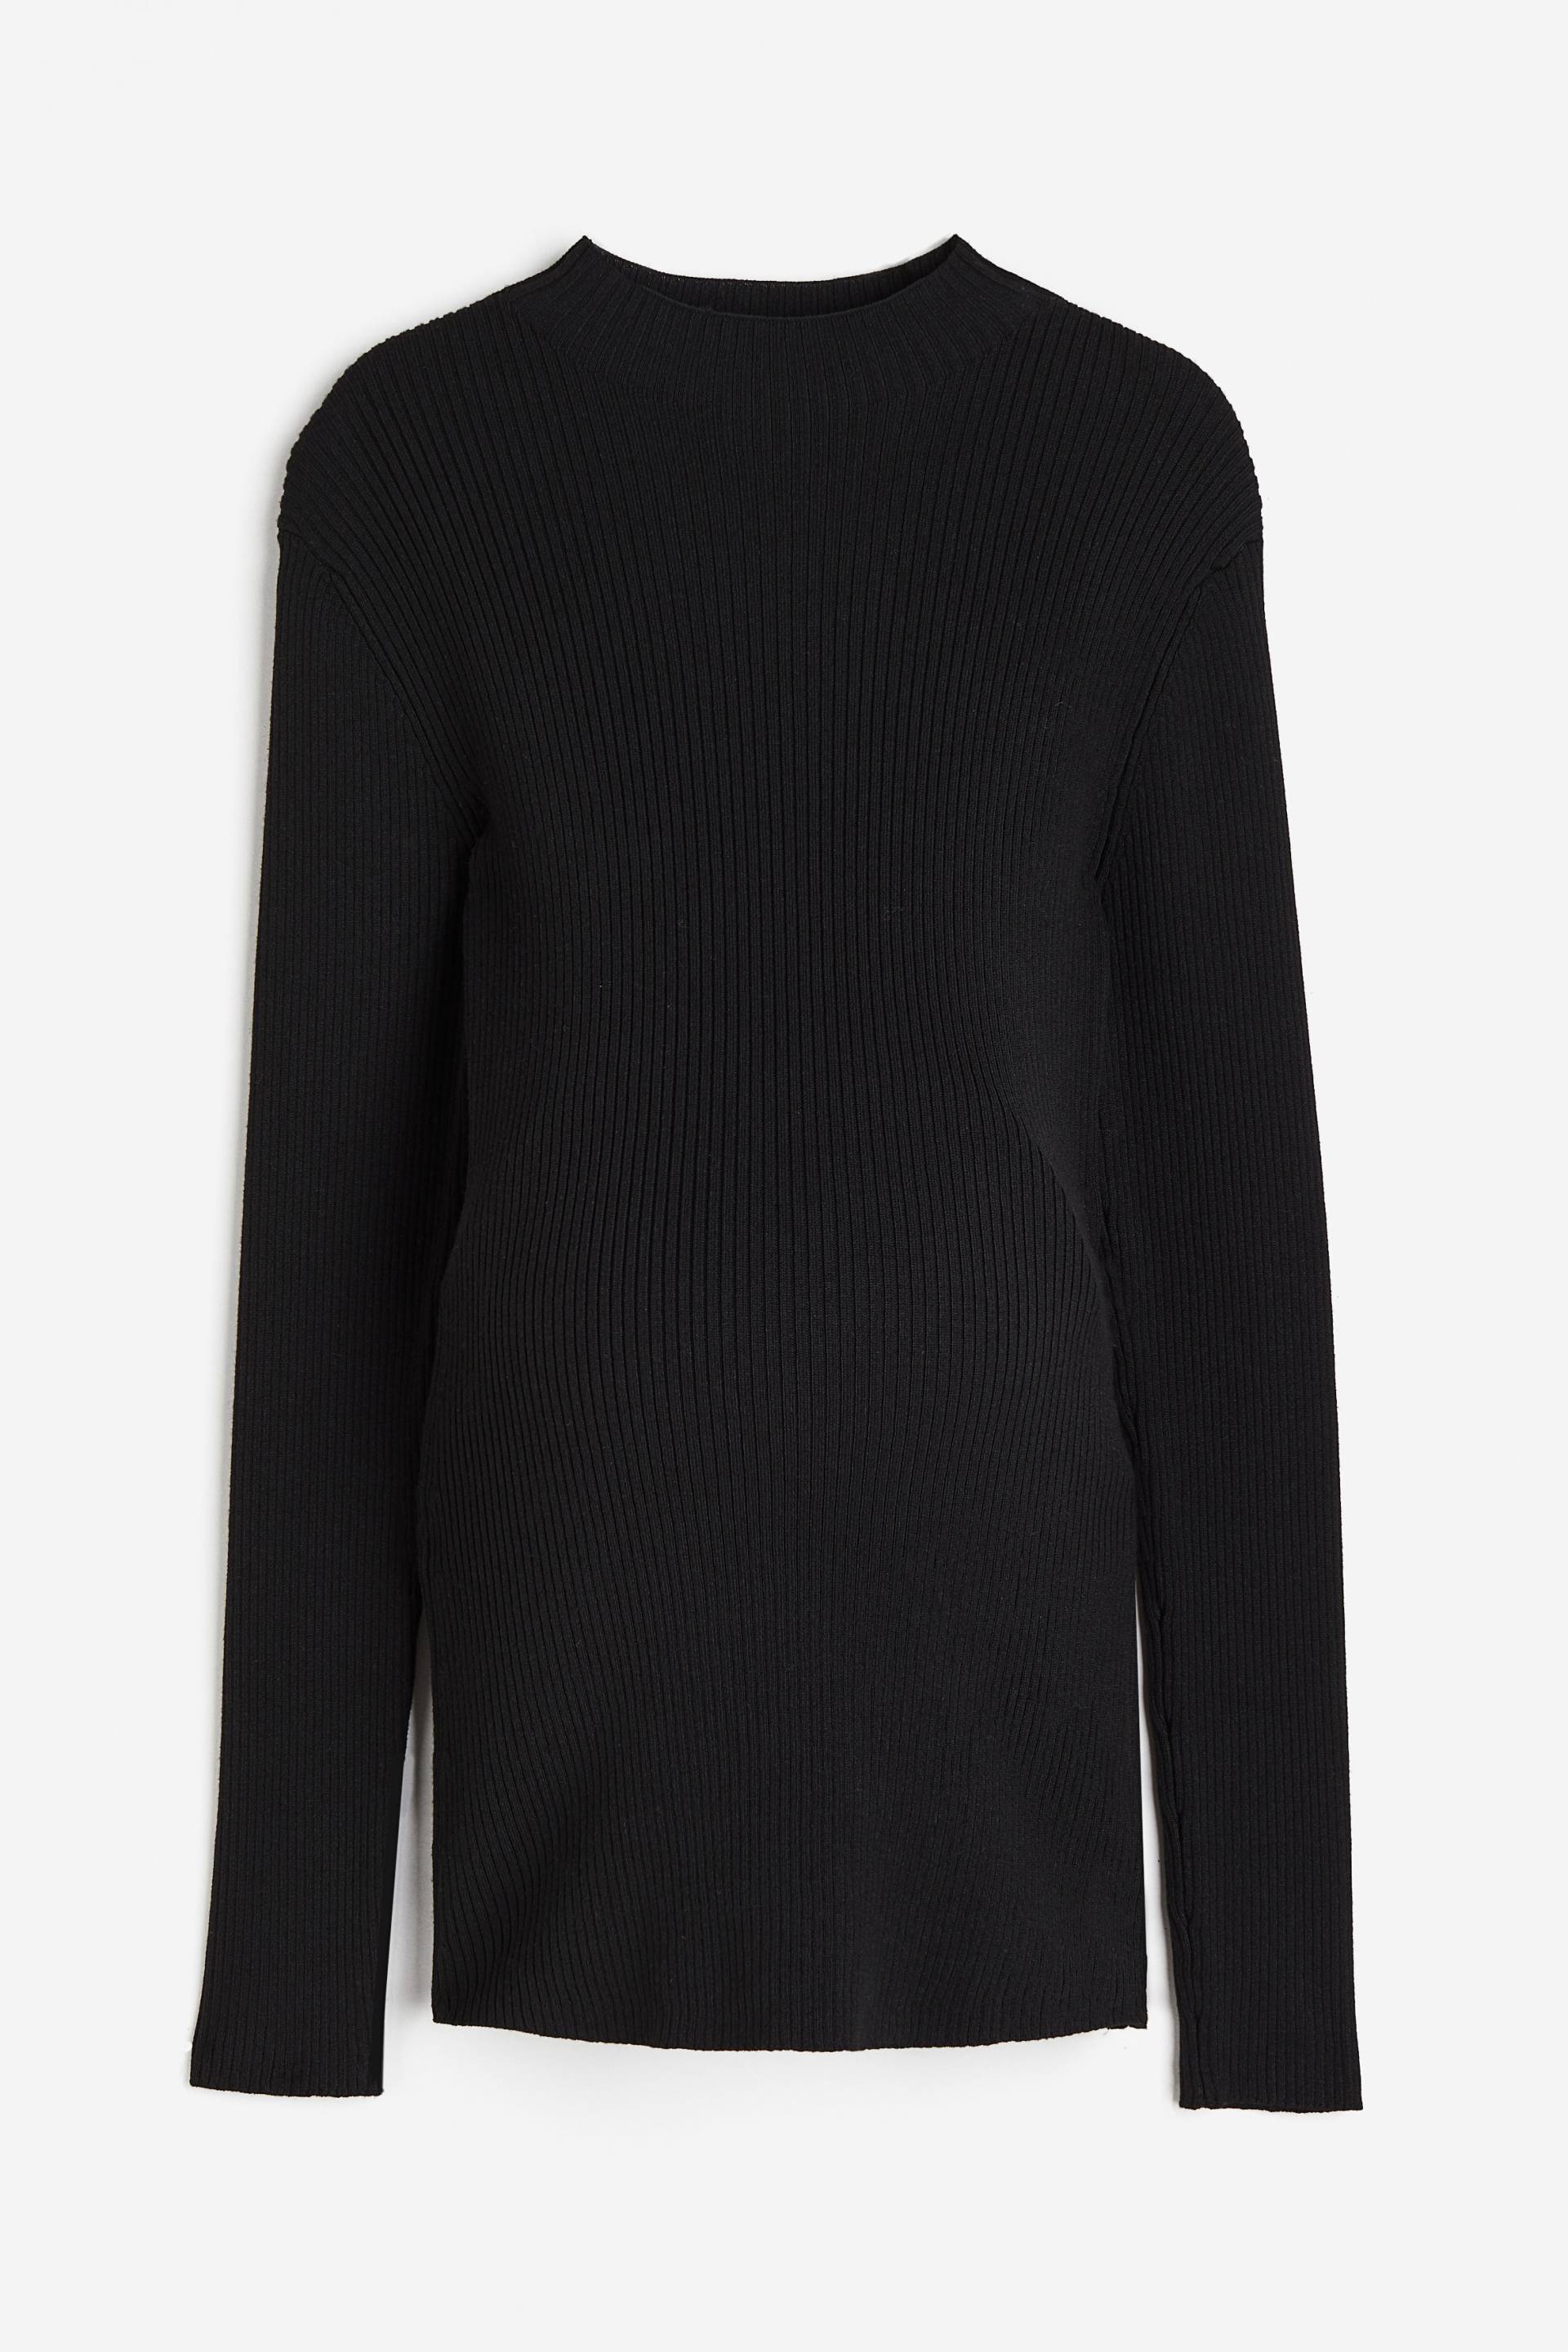 H&M MAMA Gerippter Pullover mit Turtleneck Schwarz, Tops in Größe M. Farbe: Black von H&M